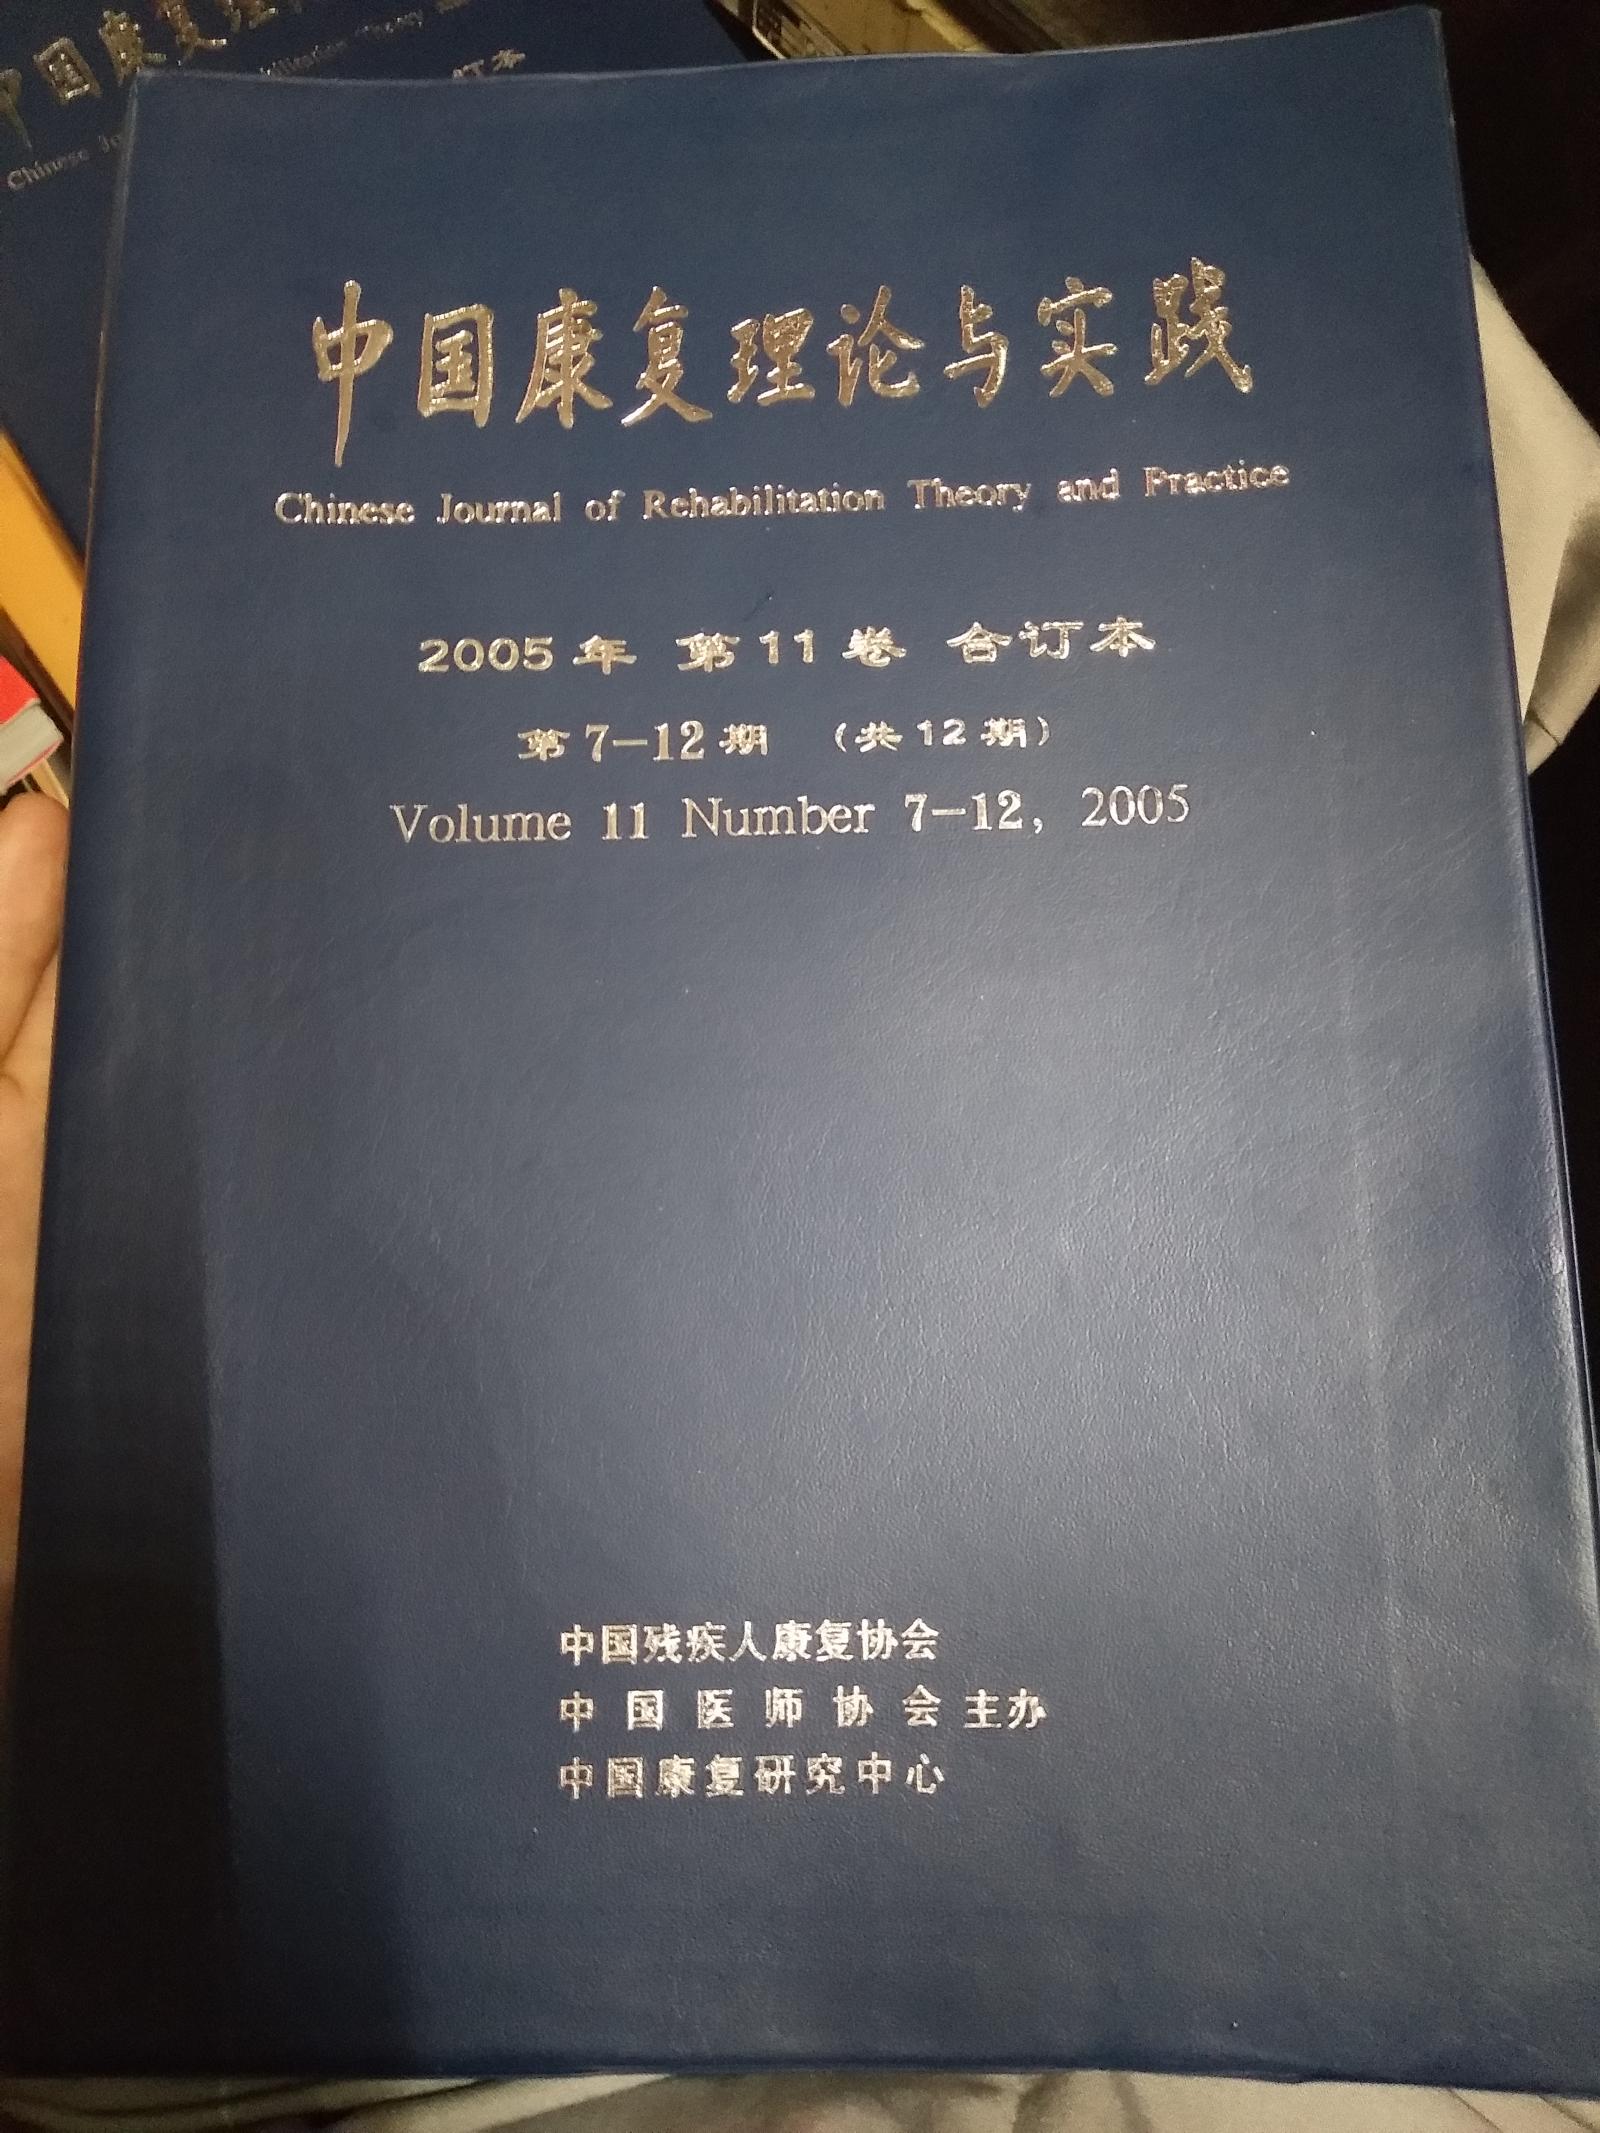 中国康复理论与实践2005年  第11卷  合订本  第7-12期（共12期）